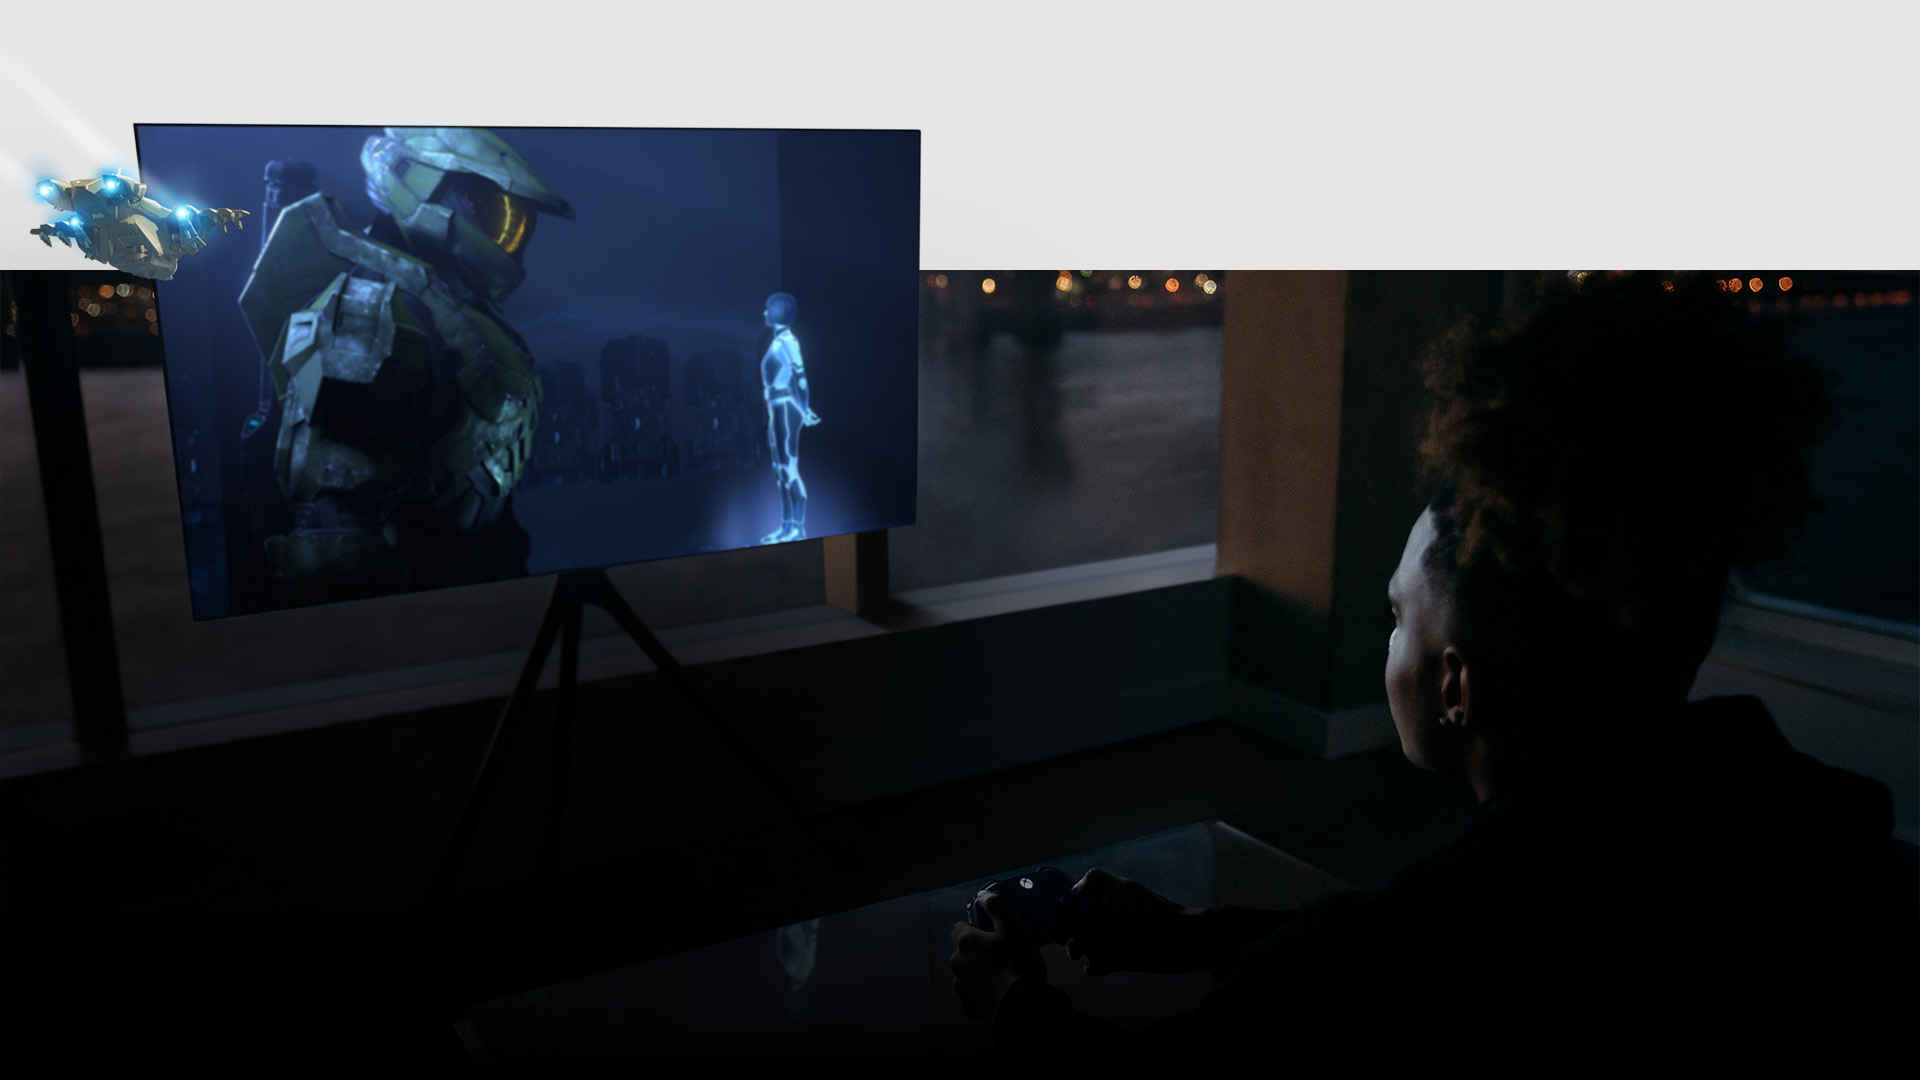 Pelaaja käyttää olohuoneessa ohjainta, kun Samsung-televisiossa toistetaan Halo Infiniten pelikuvaa